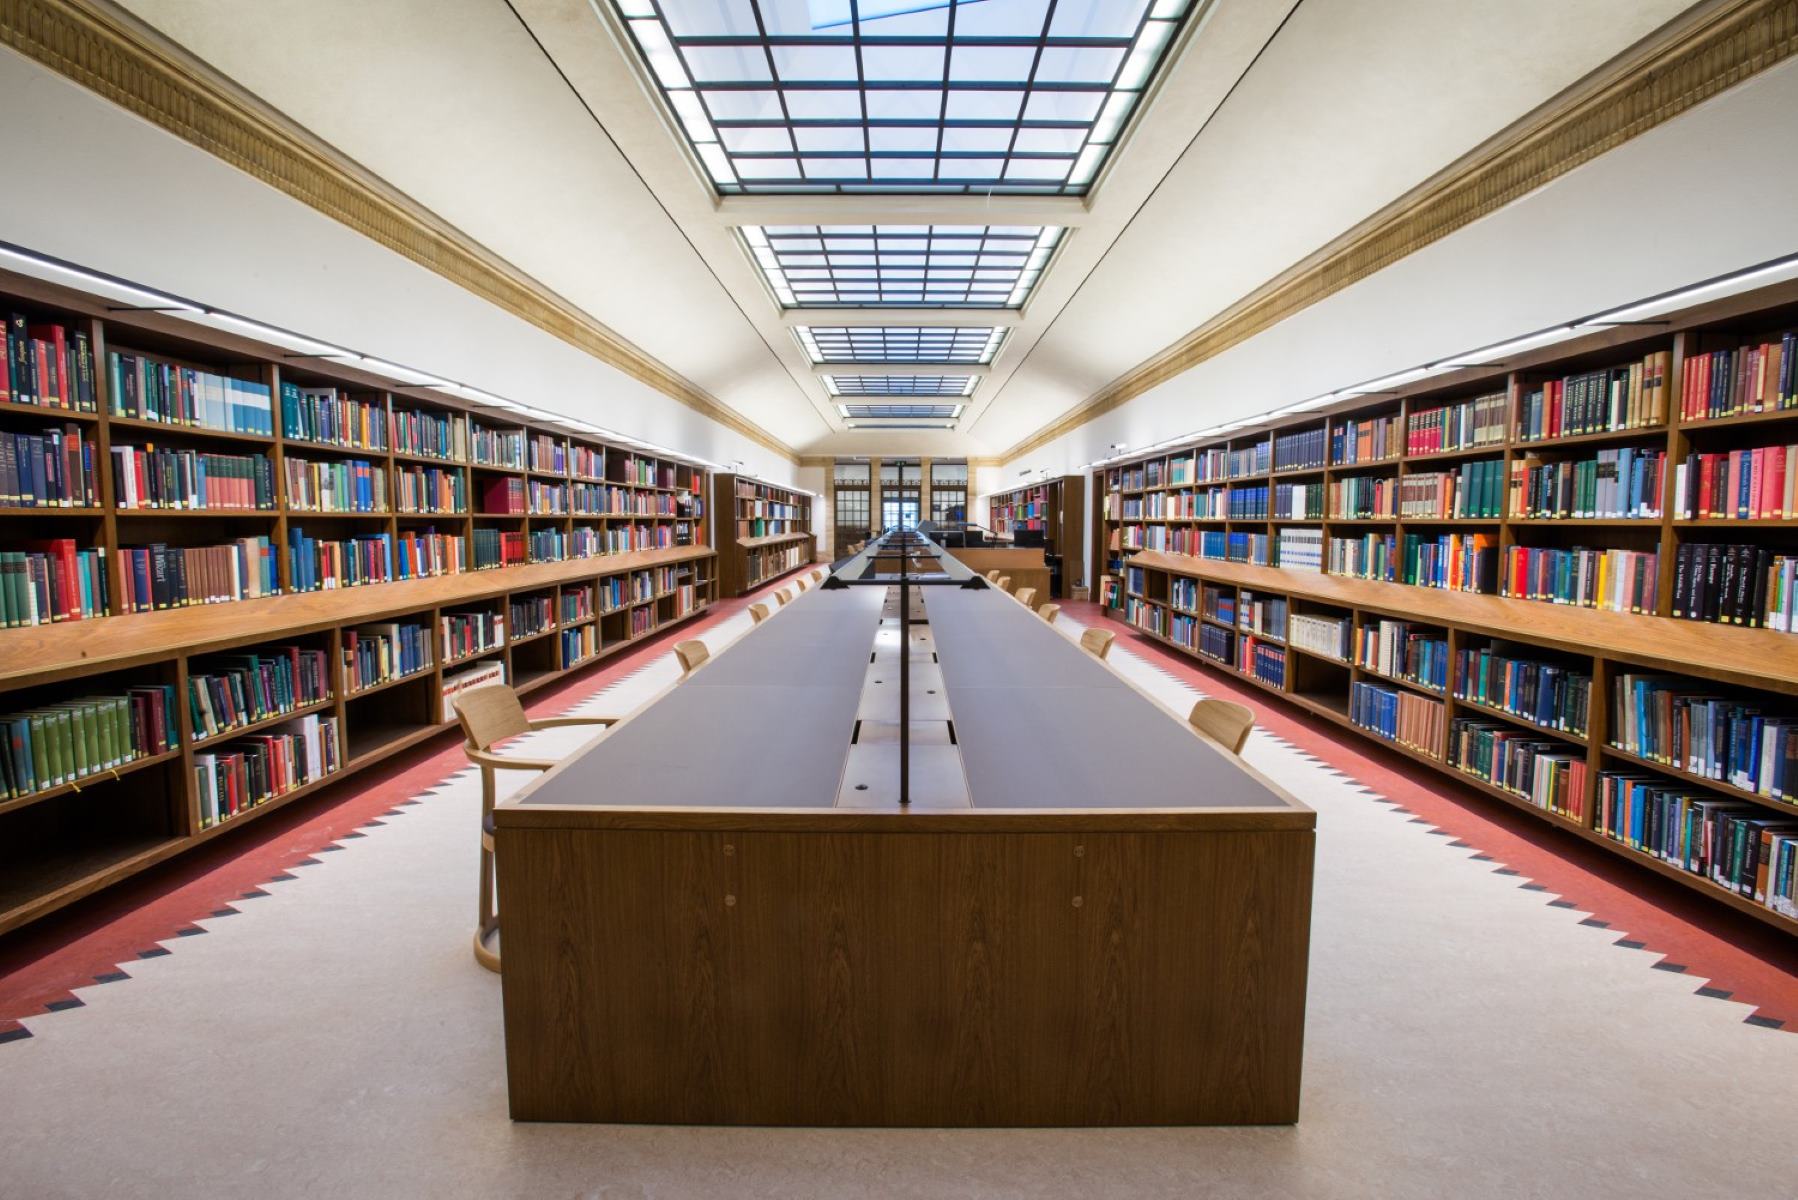 Library messages. Оксфордский университет библиотека. Йельский университет библиотека. Красивая библиотека. Красивые читальные залы.